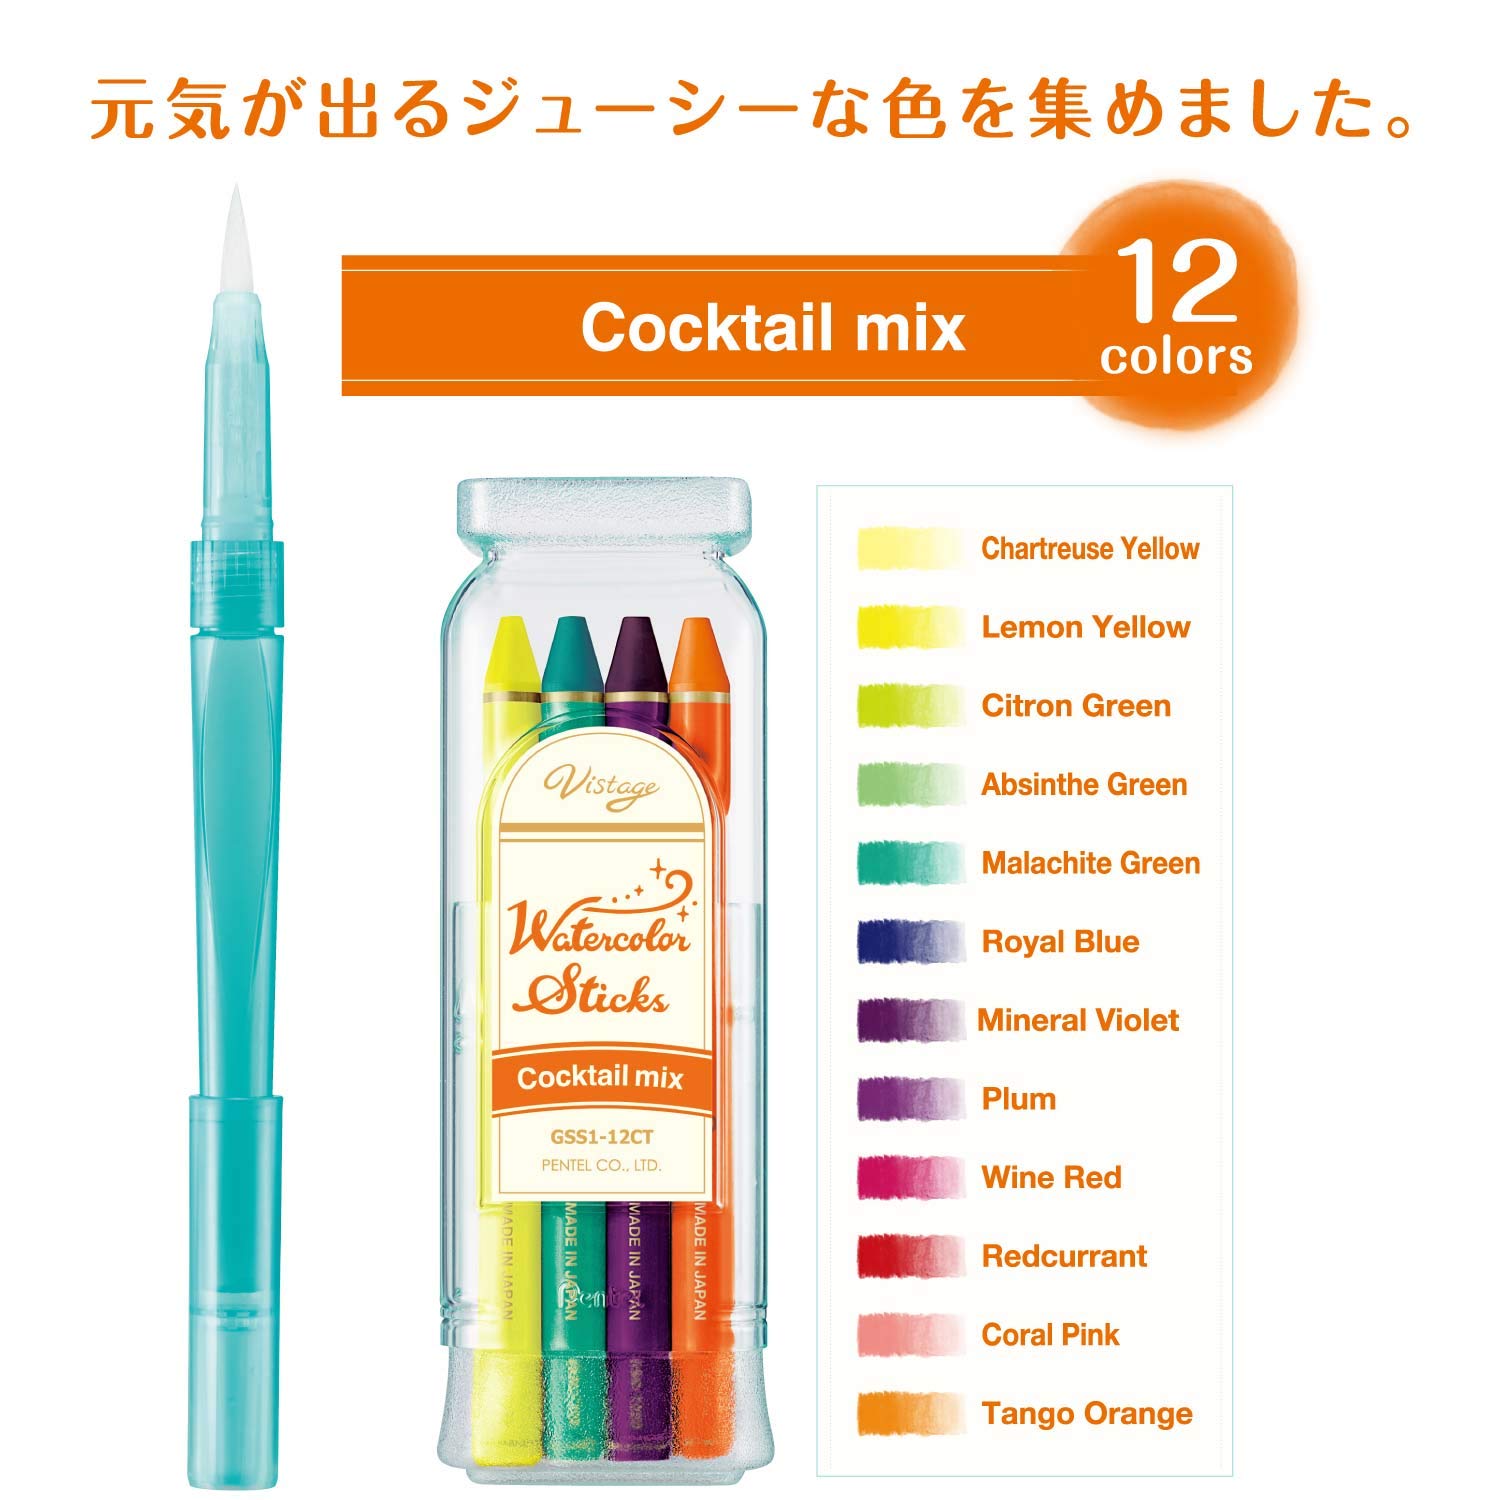  Pentel all core color pencil watercolor stick 12 color kakte Lumix GSS1-12CT